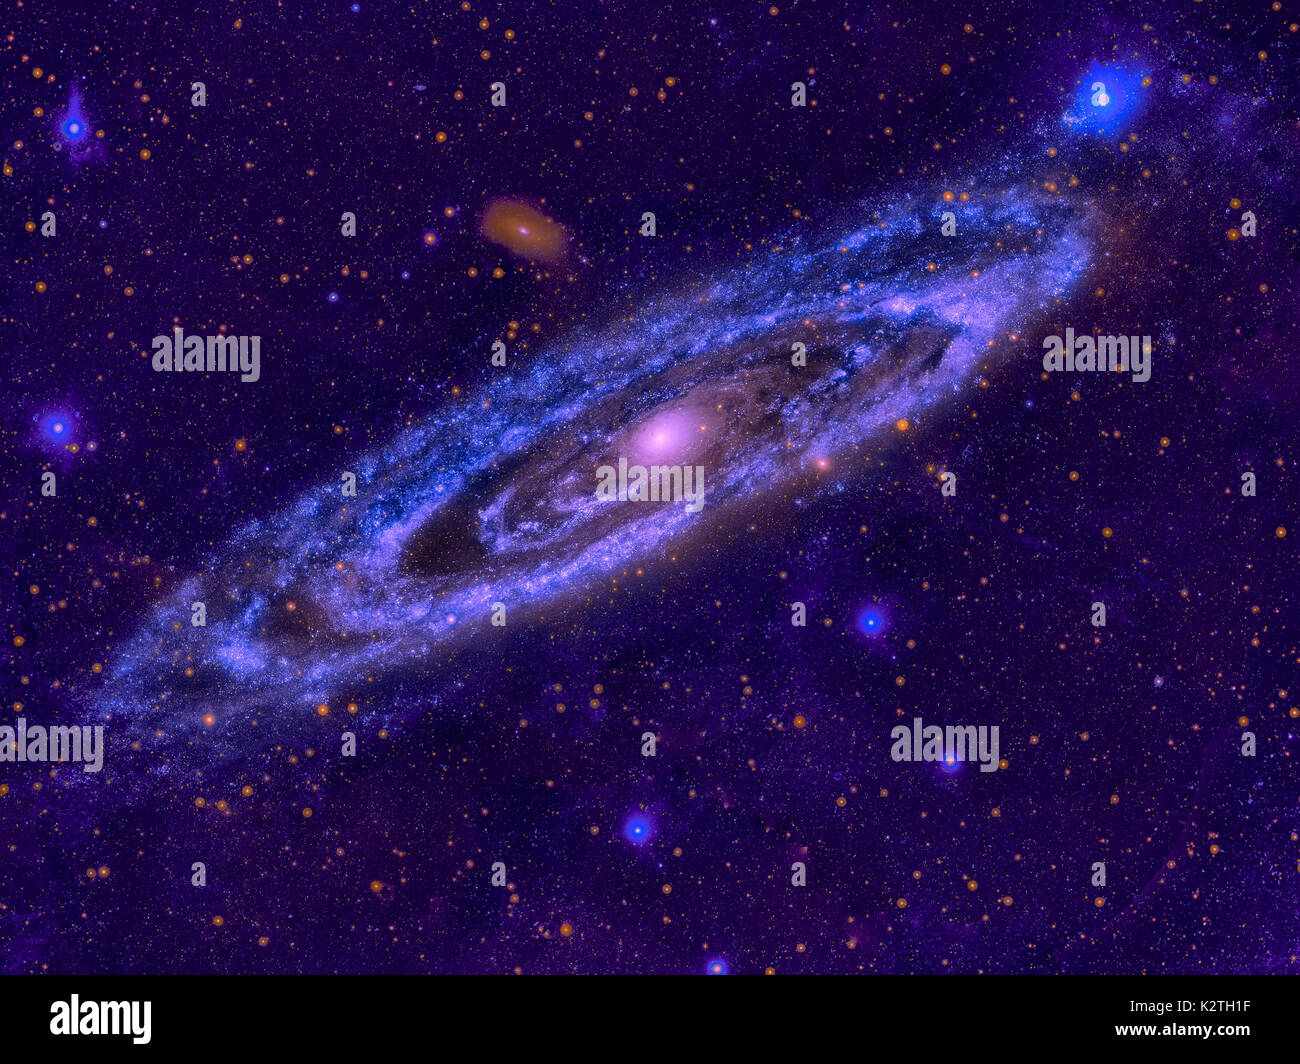 La galaxia Andrómeda, Messier 31 o M31 es una galaxia espiral en la Constelación de Andrómeda. Es la galaxia importante más cercana a la Vía Láctea. Retocar Foto de stock